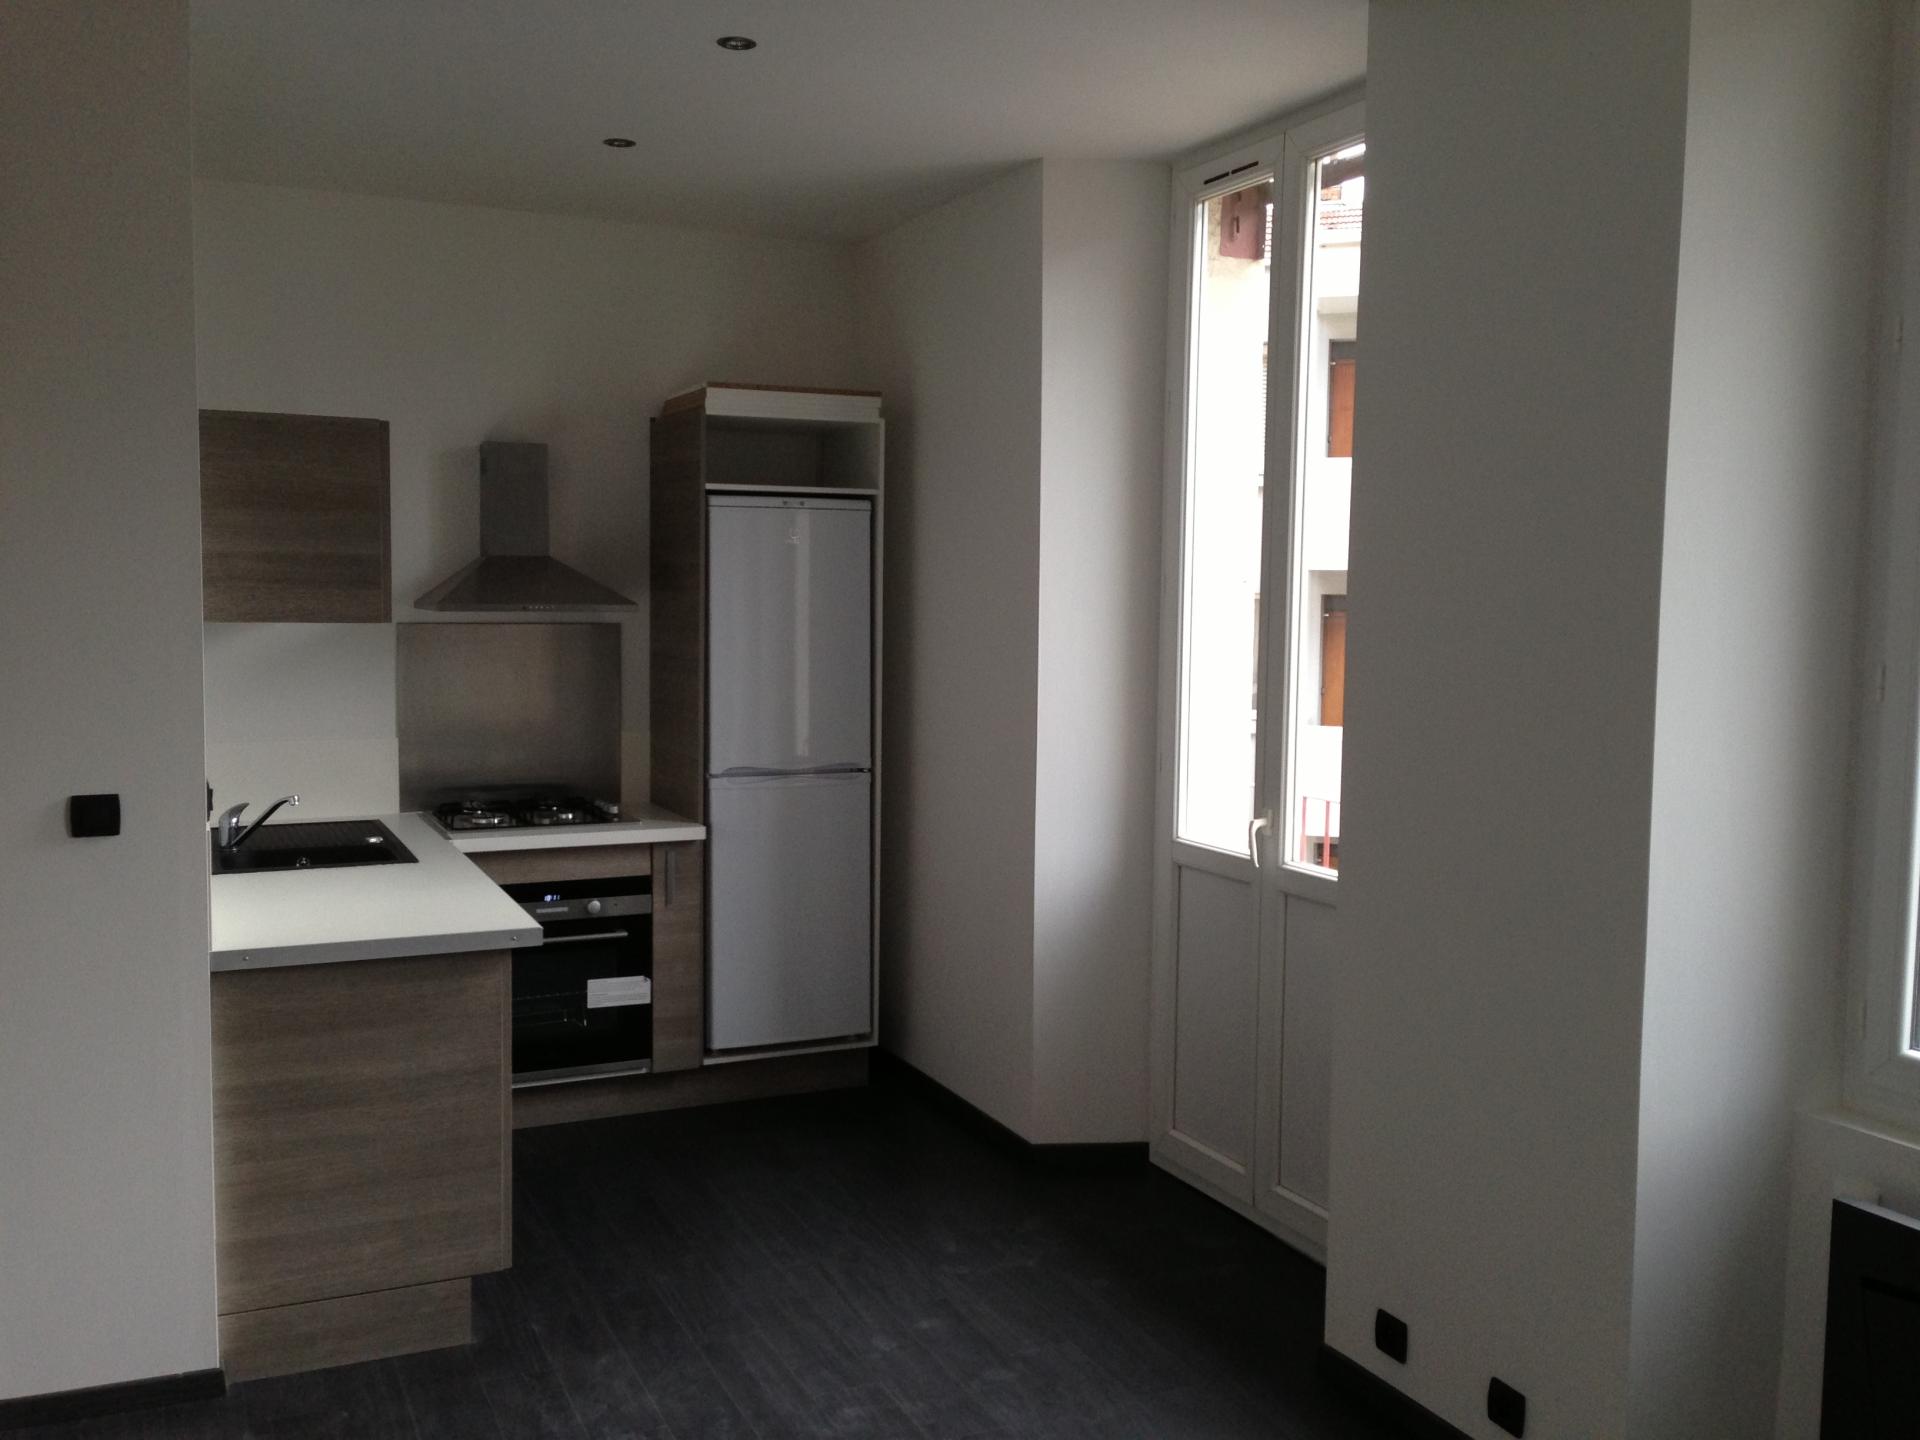 Location appartement Grenoble: du côté des locataires